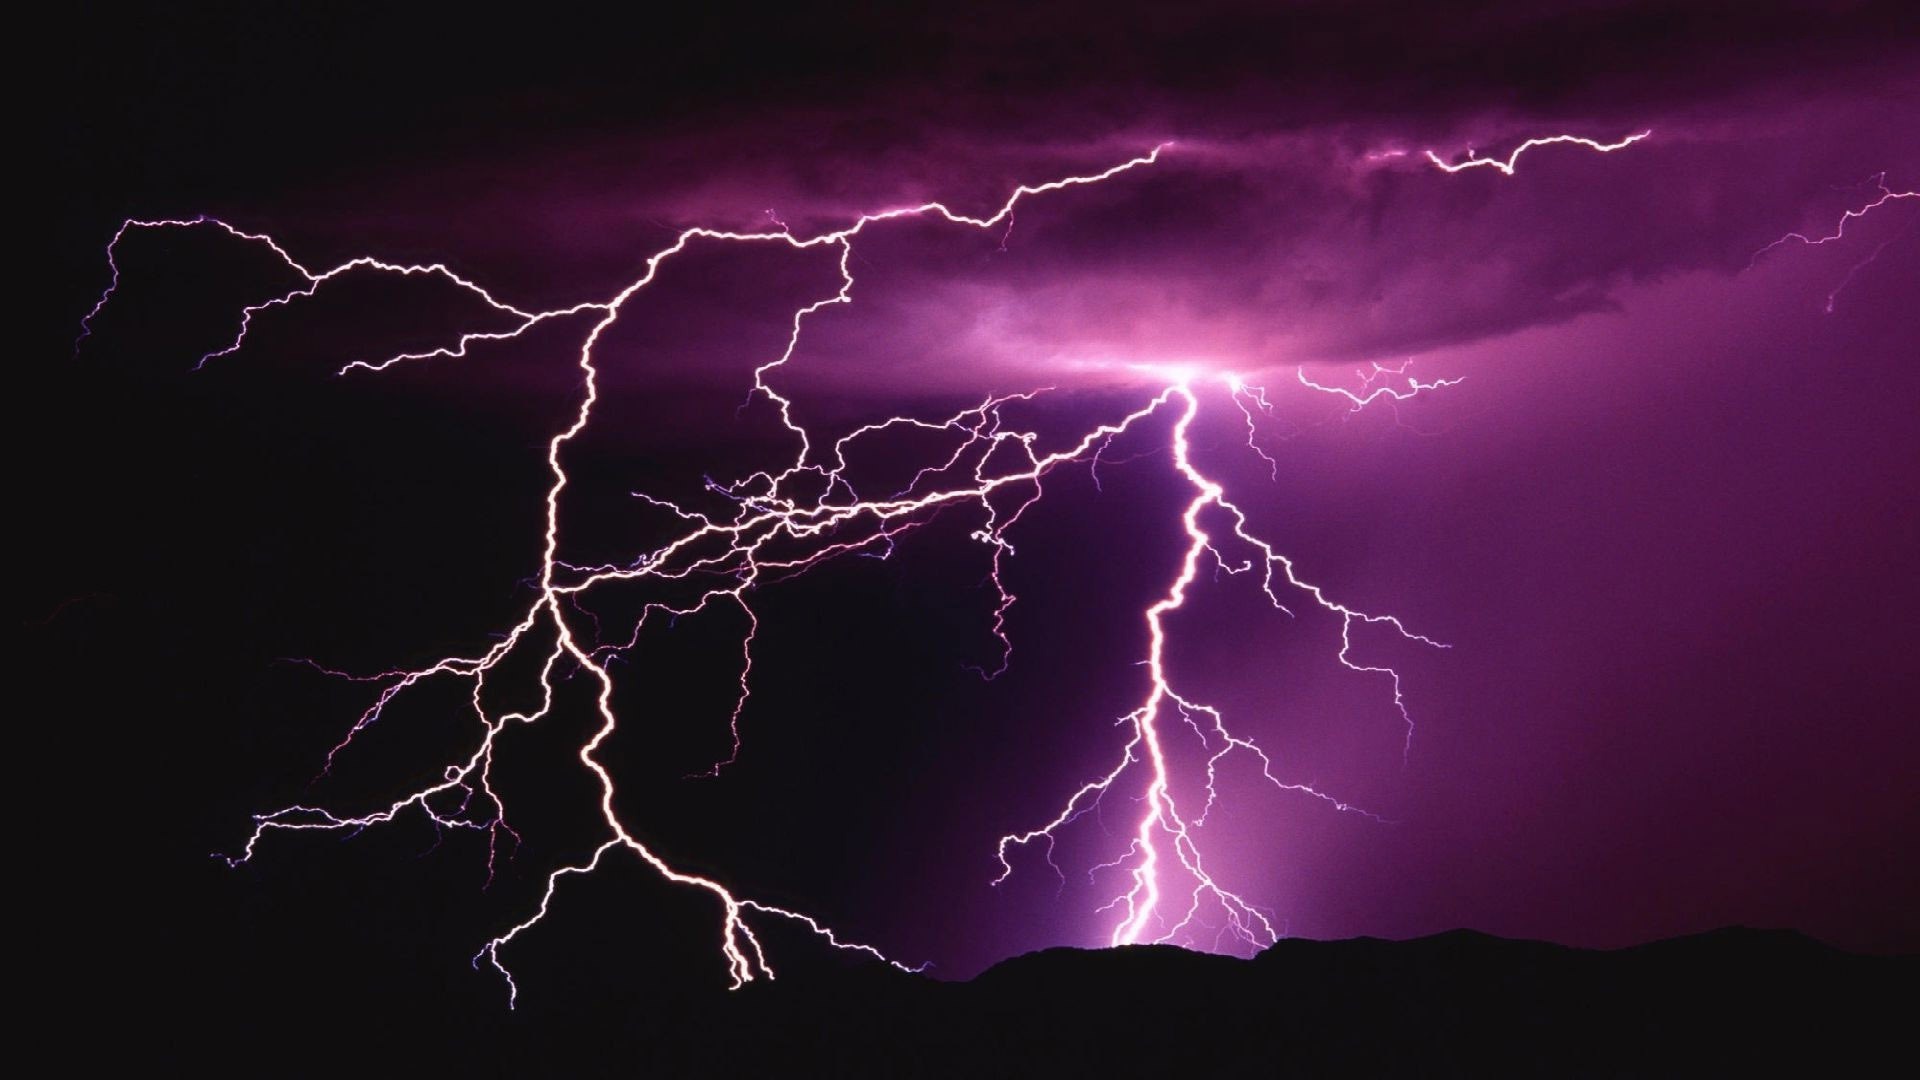 nature-lightning-wallpaper-widescreen-high-resolution-photos-for-desktop-background